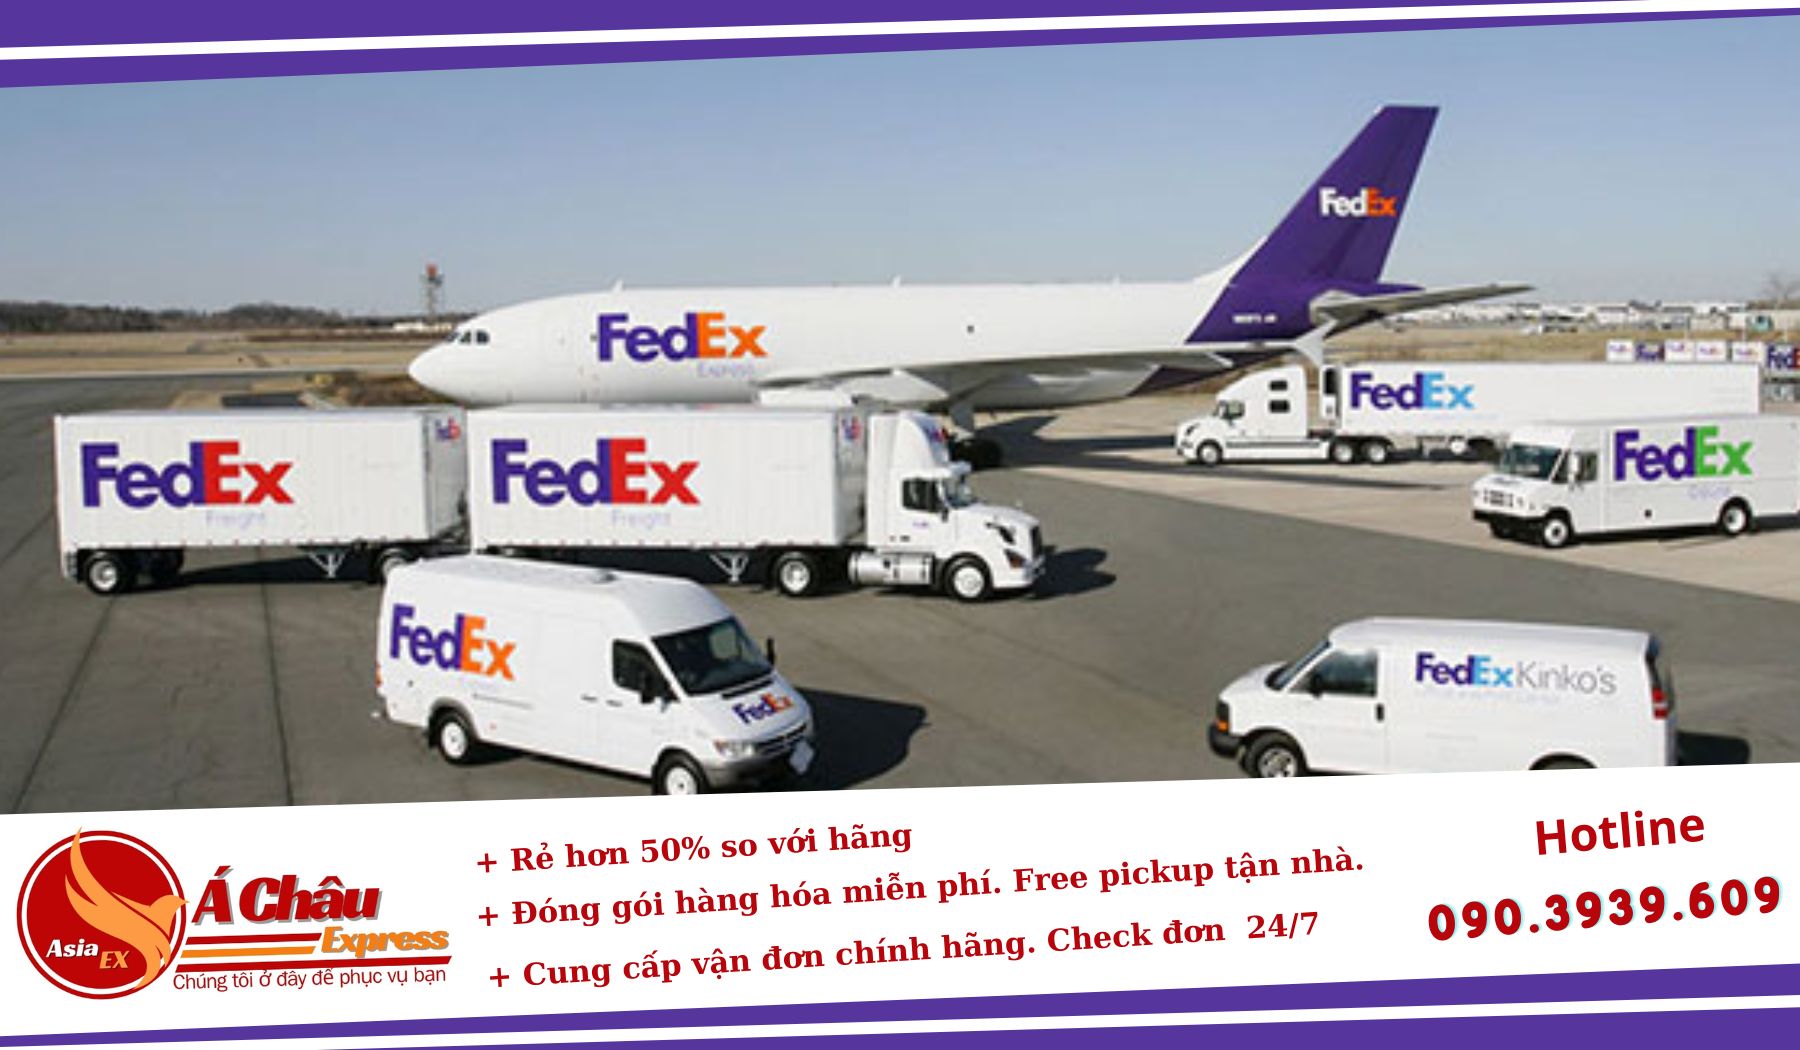 chuyển phát nhanh Fedex giá rẻ